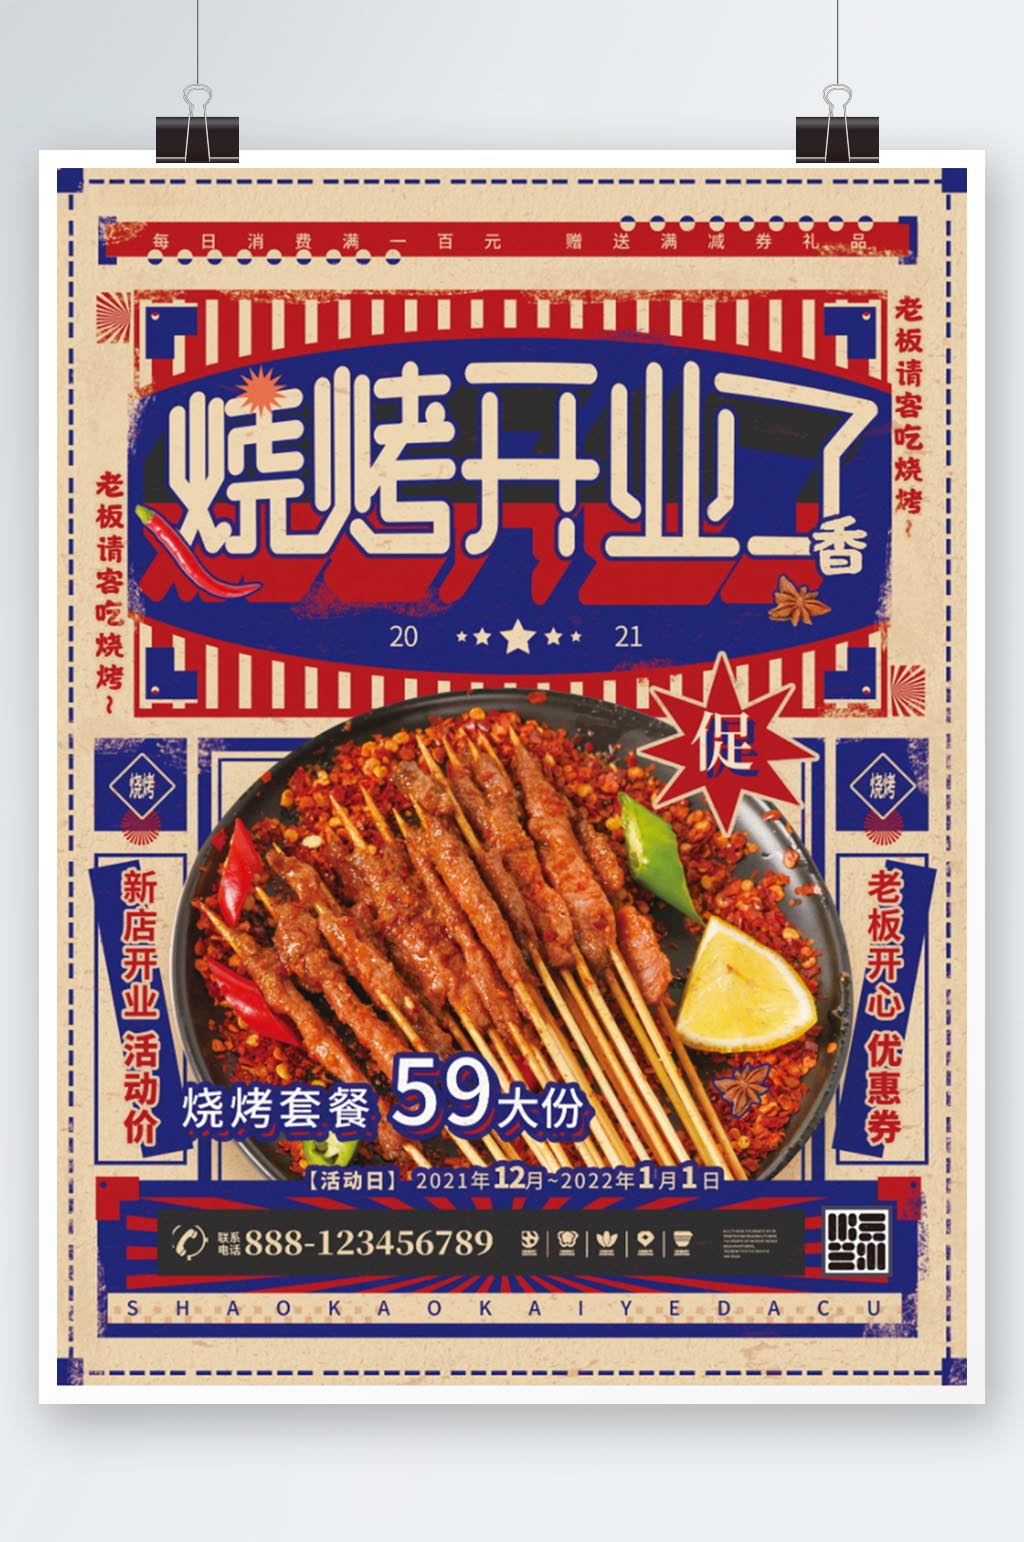 烧烤开业了复古风烤串活动美食促销宣传海报